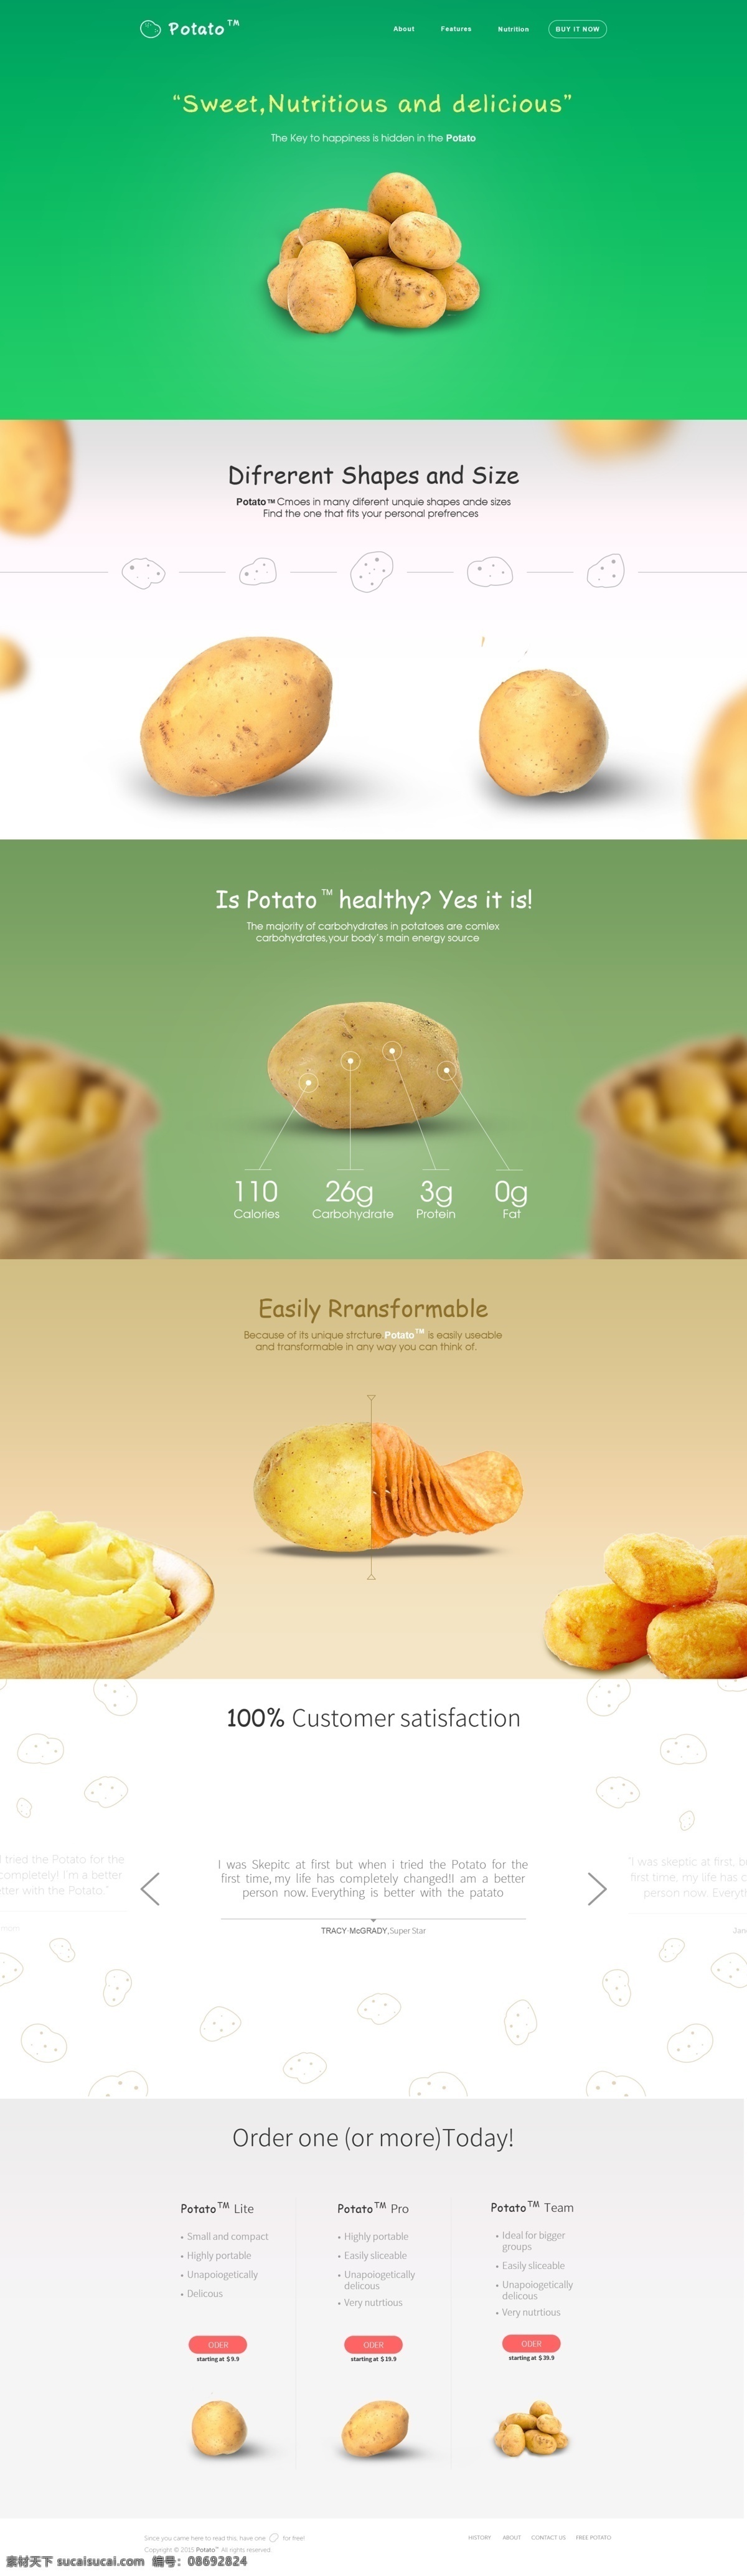 马铃薯 淘宝 网页设计 电商设计 练习作品 绿色 食品电商网页 淘宝海报 土豆